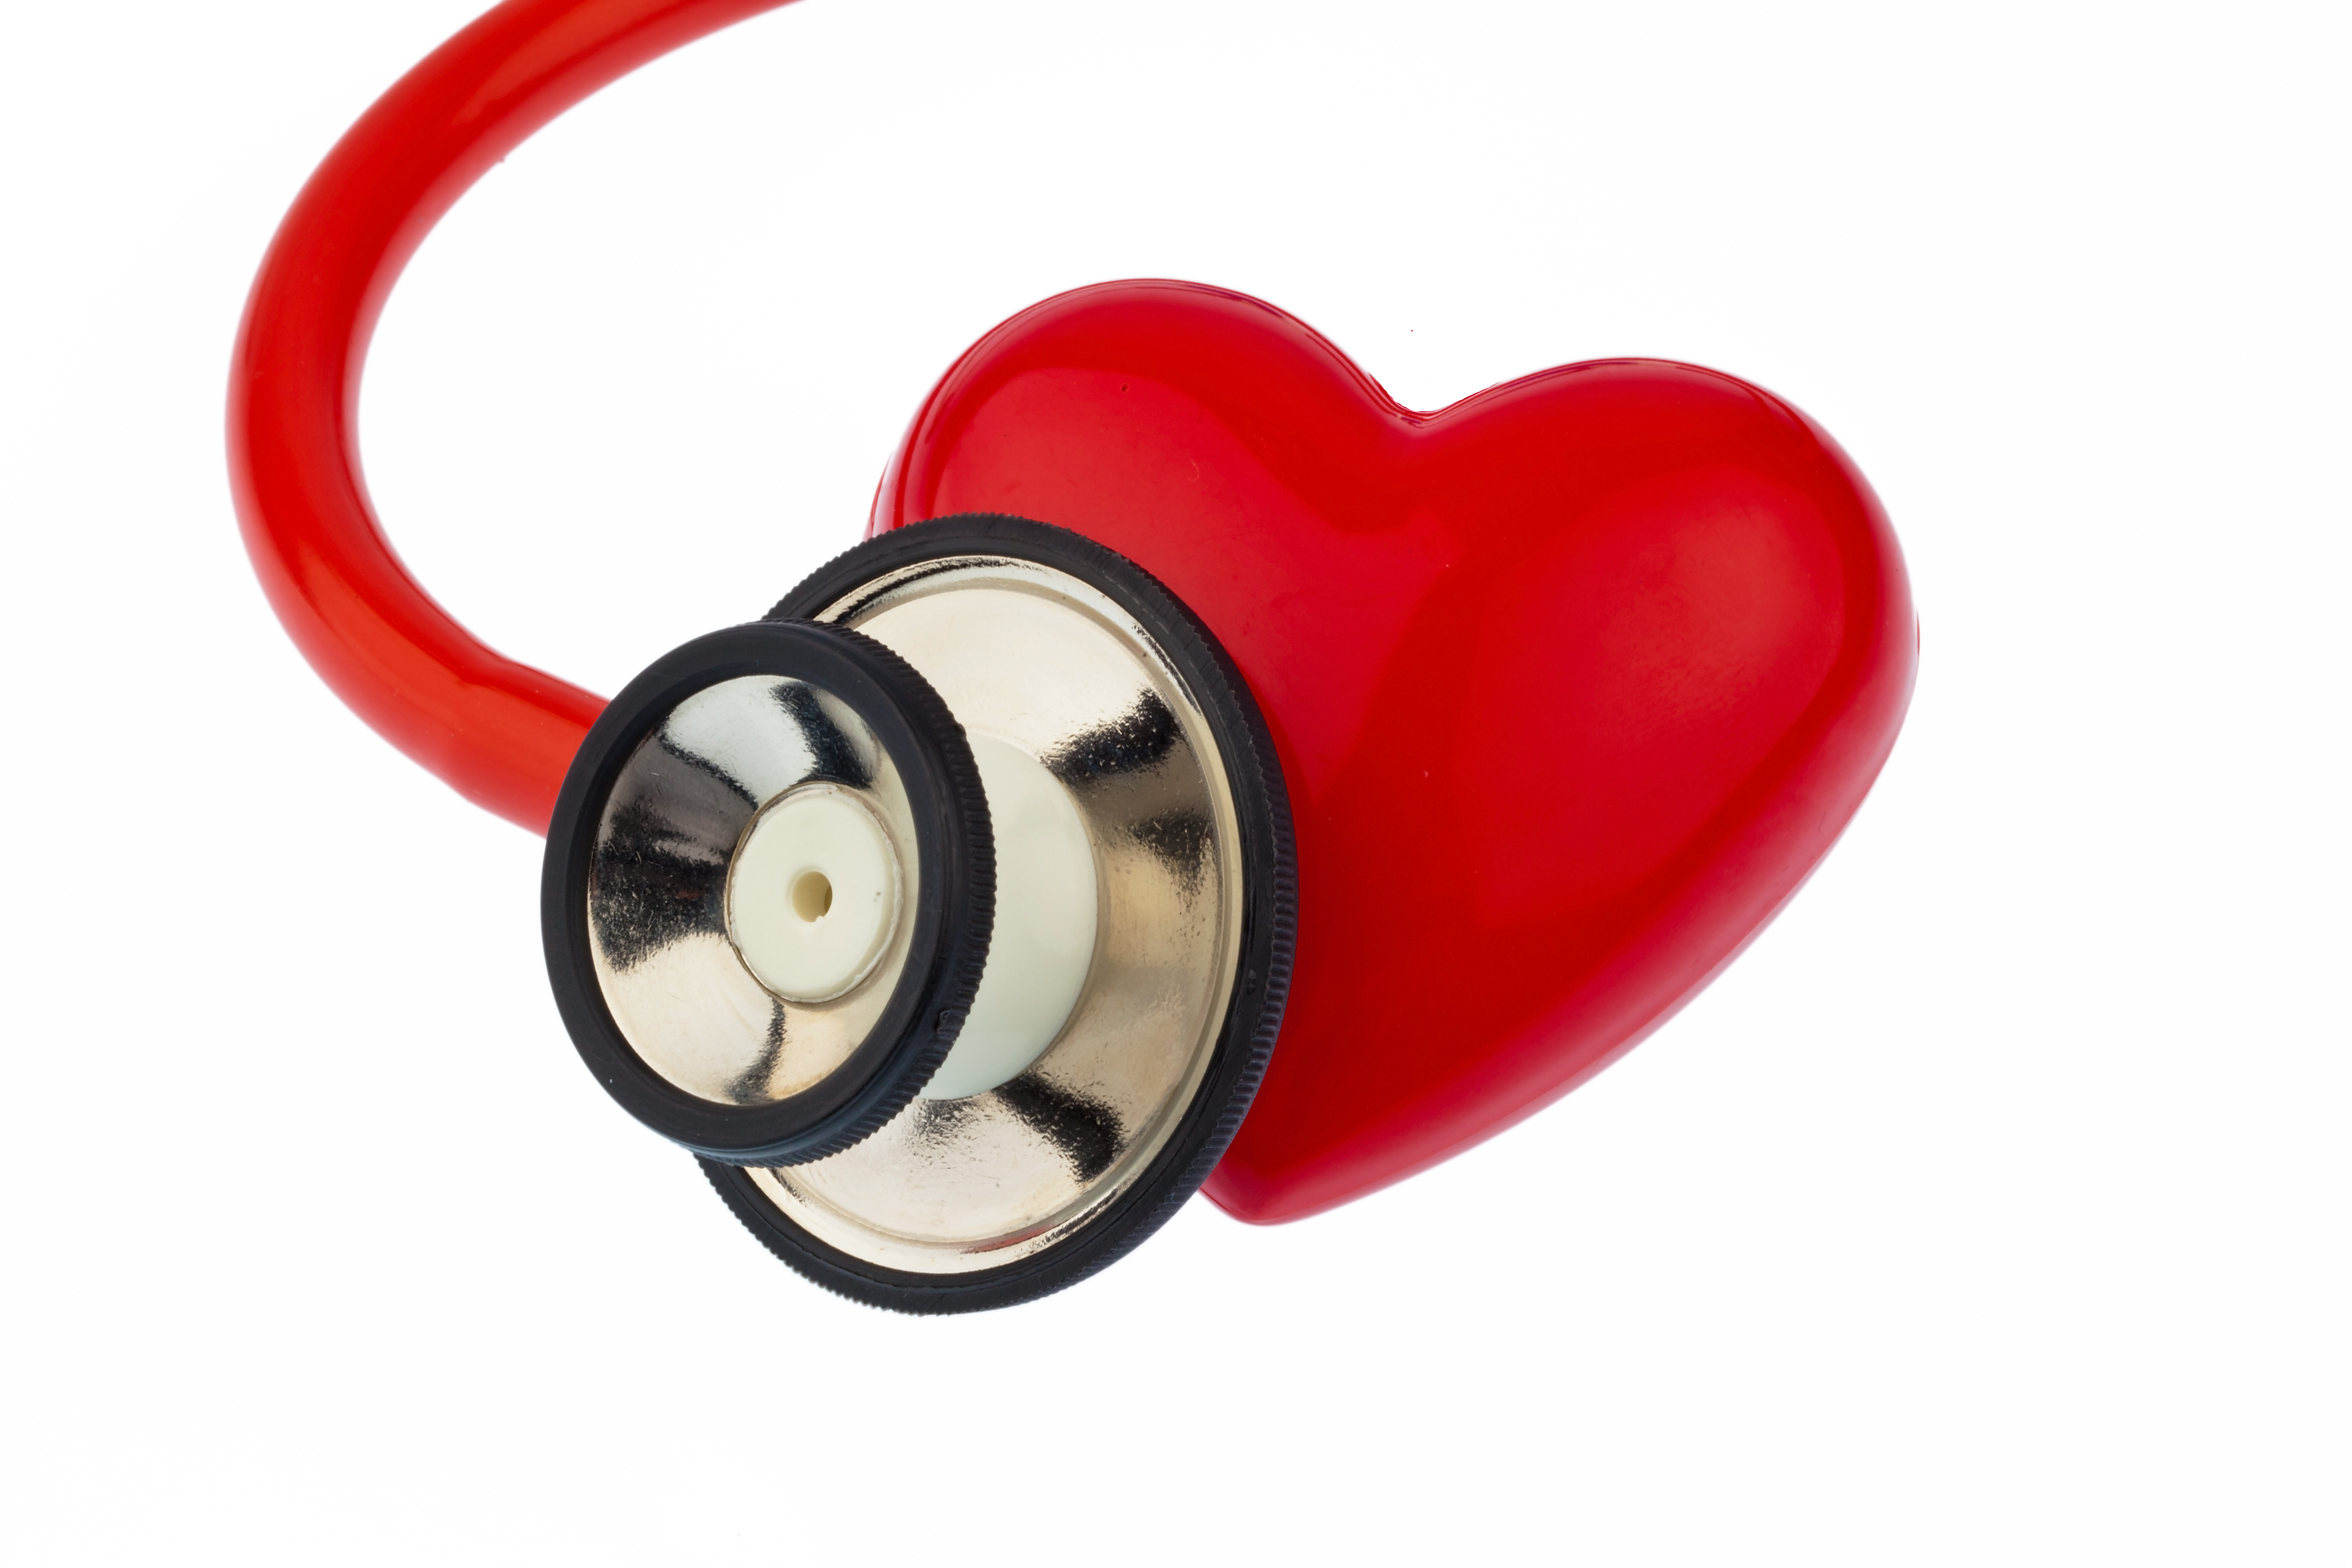 Sydämen vajaatoiminta: Stetoskooppi kuuntelee sydäntä